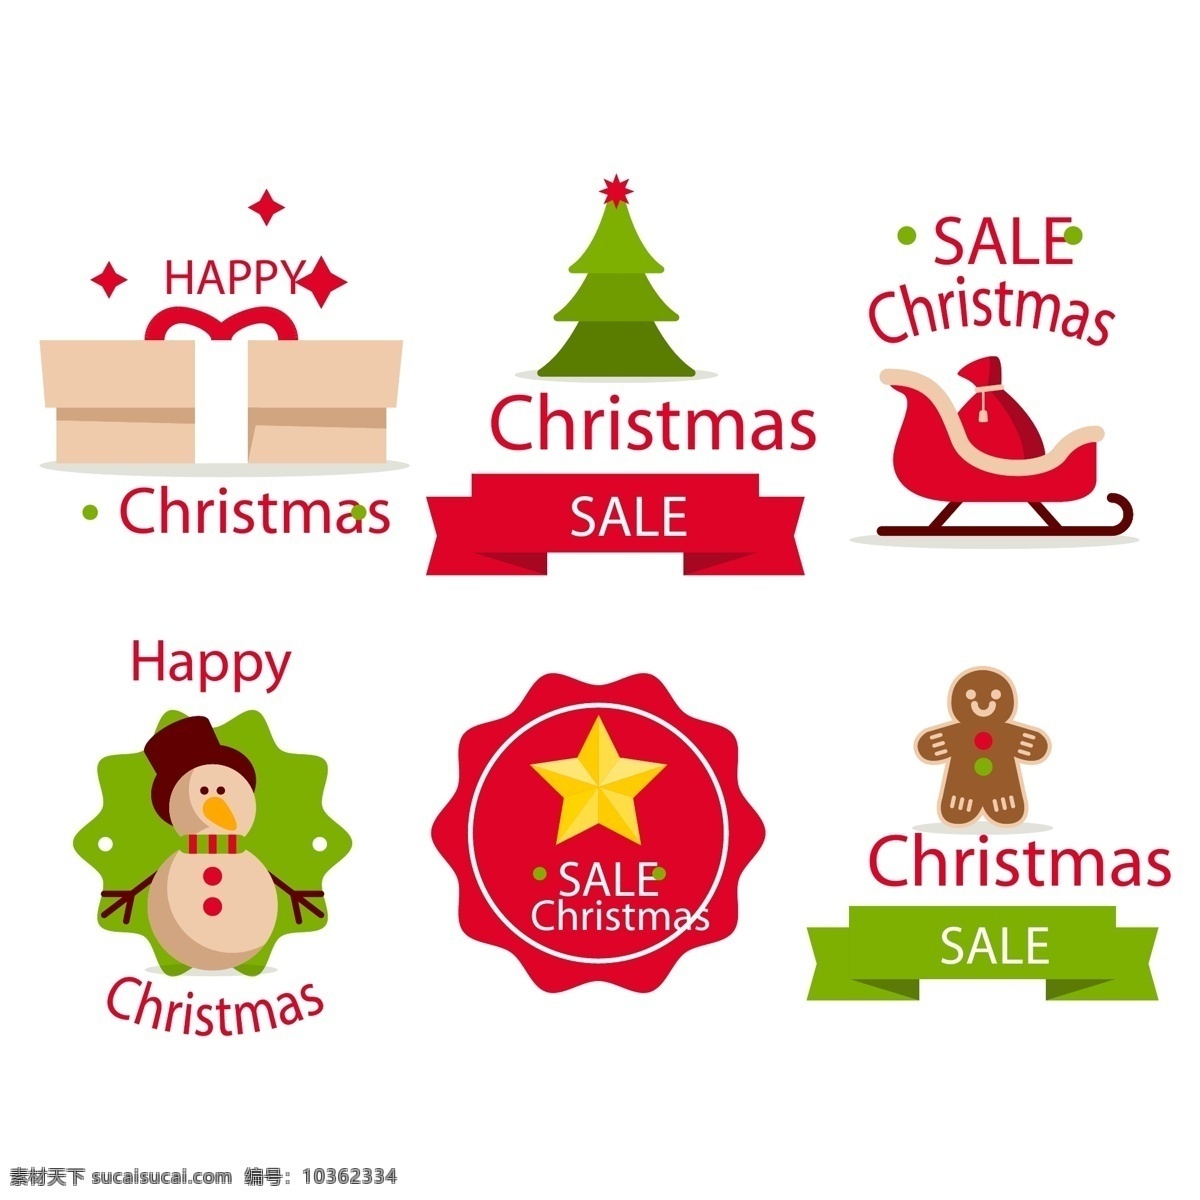 可爱 圣诞节 标签 星星 矢量素材 卡通 姜饼人 圣诞树 雪人 礼物 英文